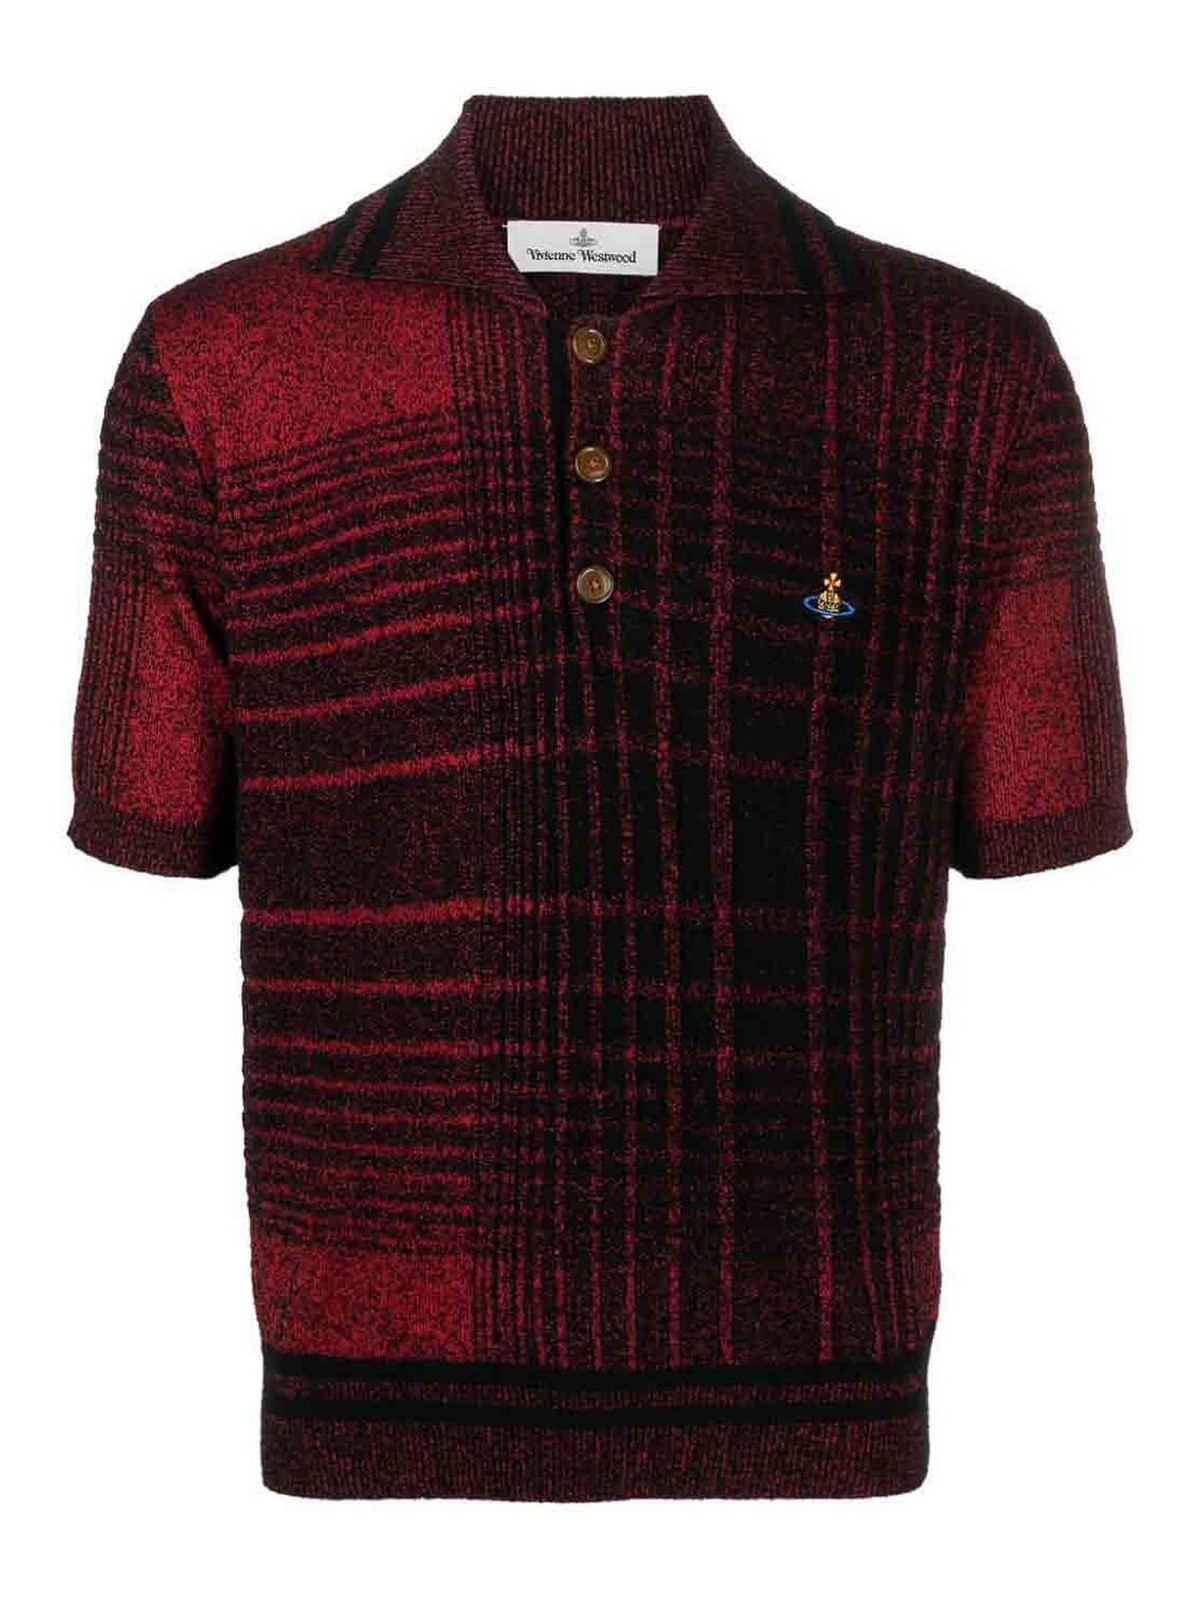 ポロシャツ Vivienne Westwood - ポロシャツ - 赤 - 3803002EK0028O101